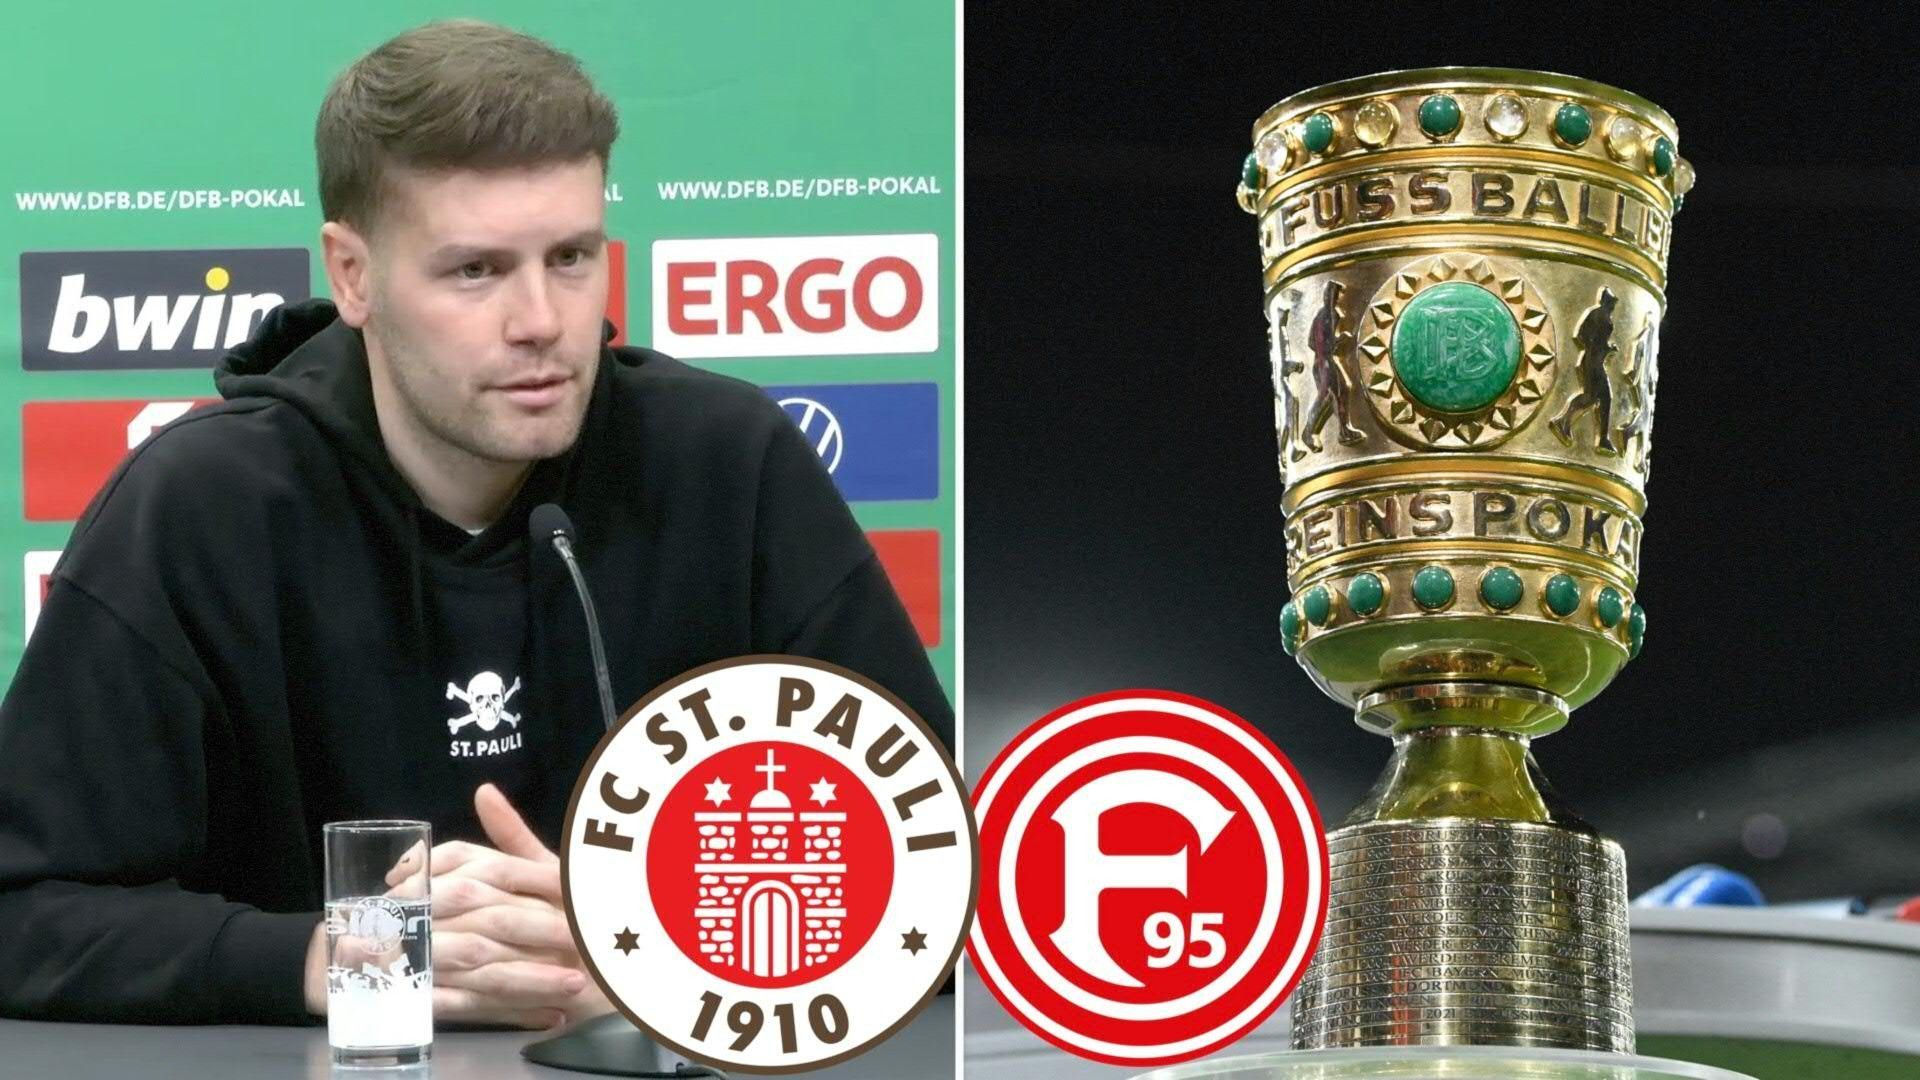 St. Pauli heiß auf Pokal-Coup: "Großes Erreichen"